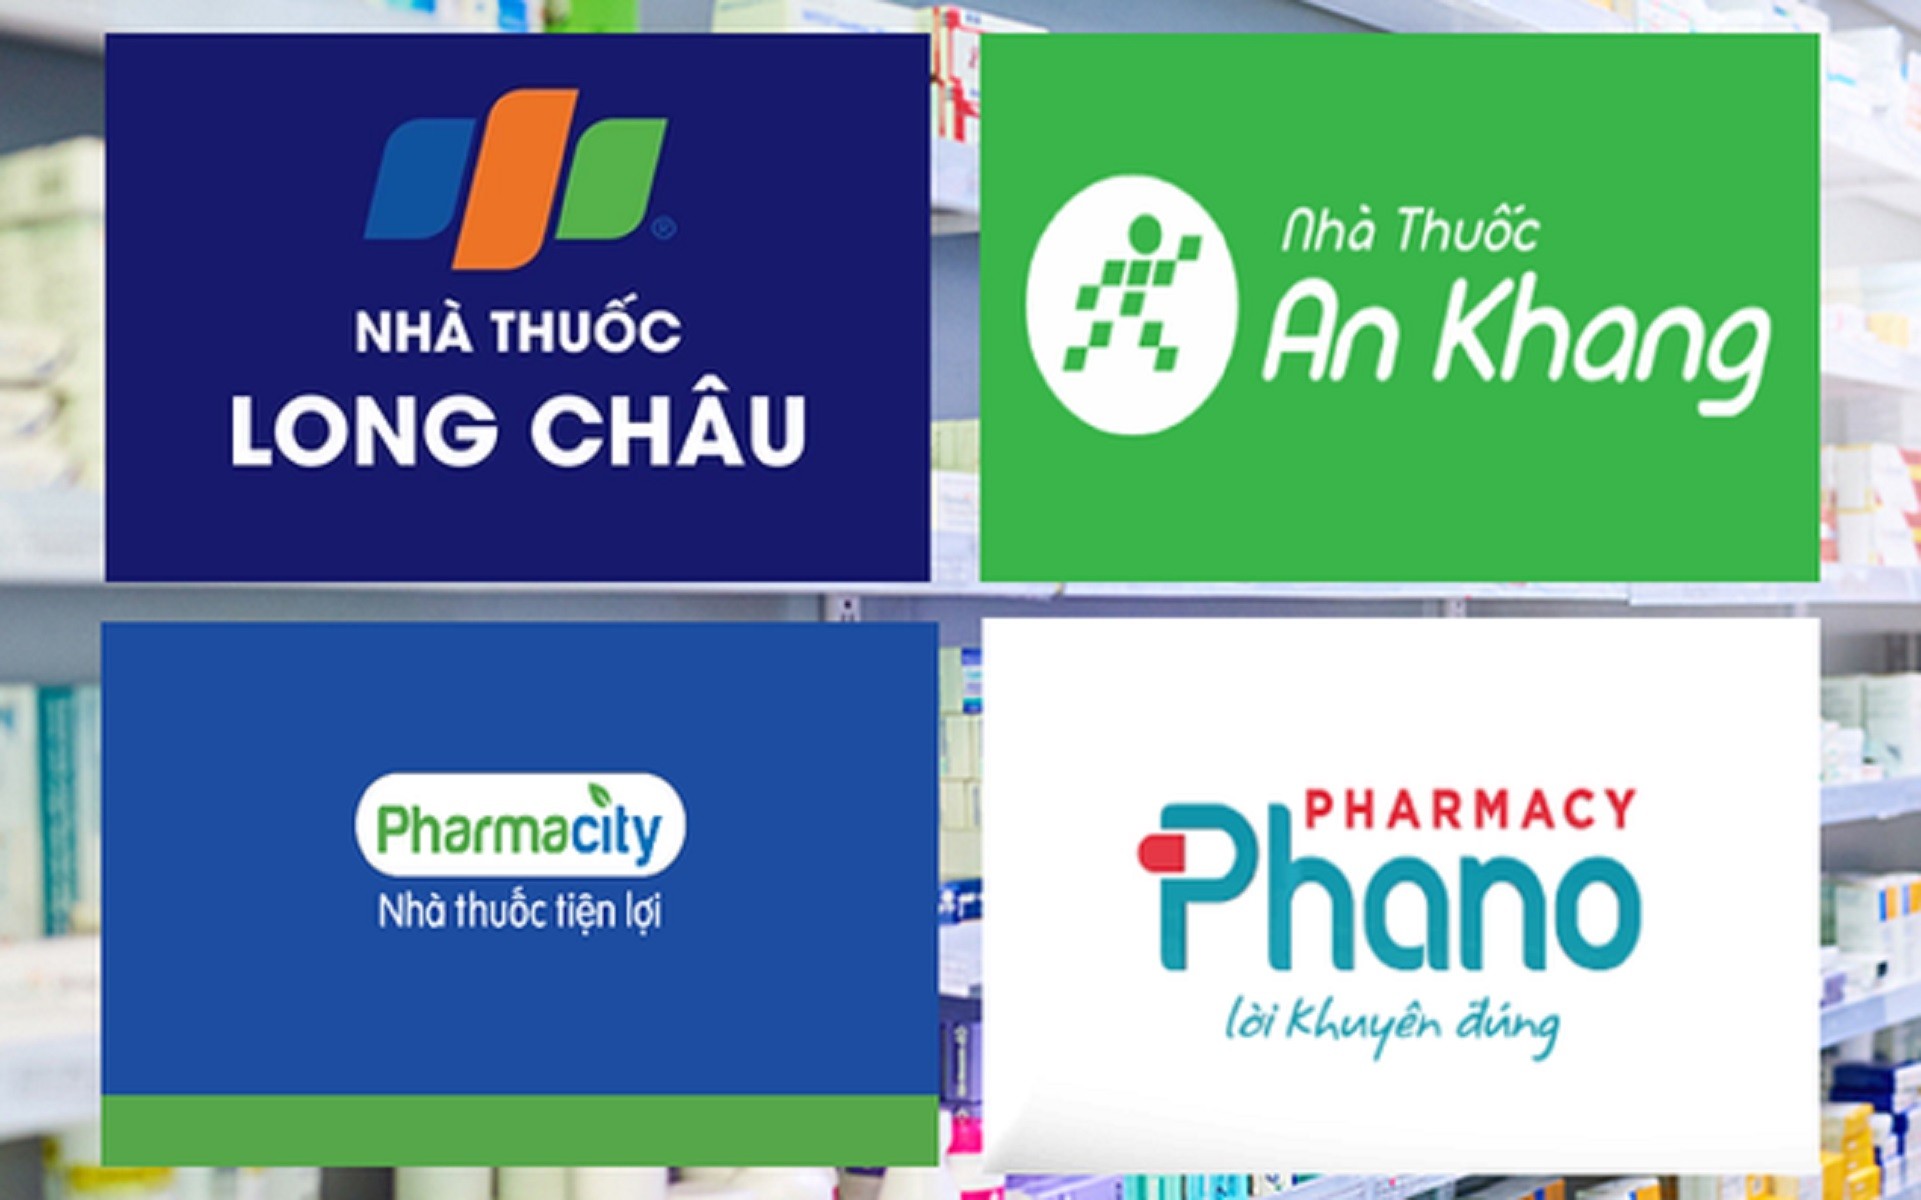 

Thị trường bán lẻ dược phẩm cũng đang cạnh tranh quyết liệt với nhiều tên tuổi lớn điển hình như Long Châu, Pharmacity, An Khang và Phano
